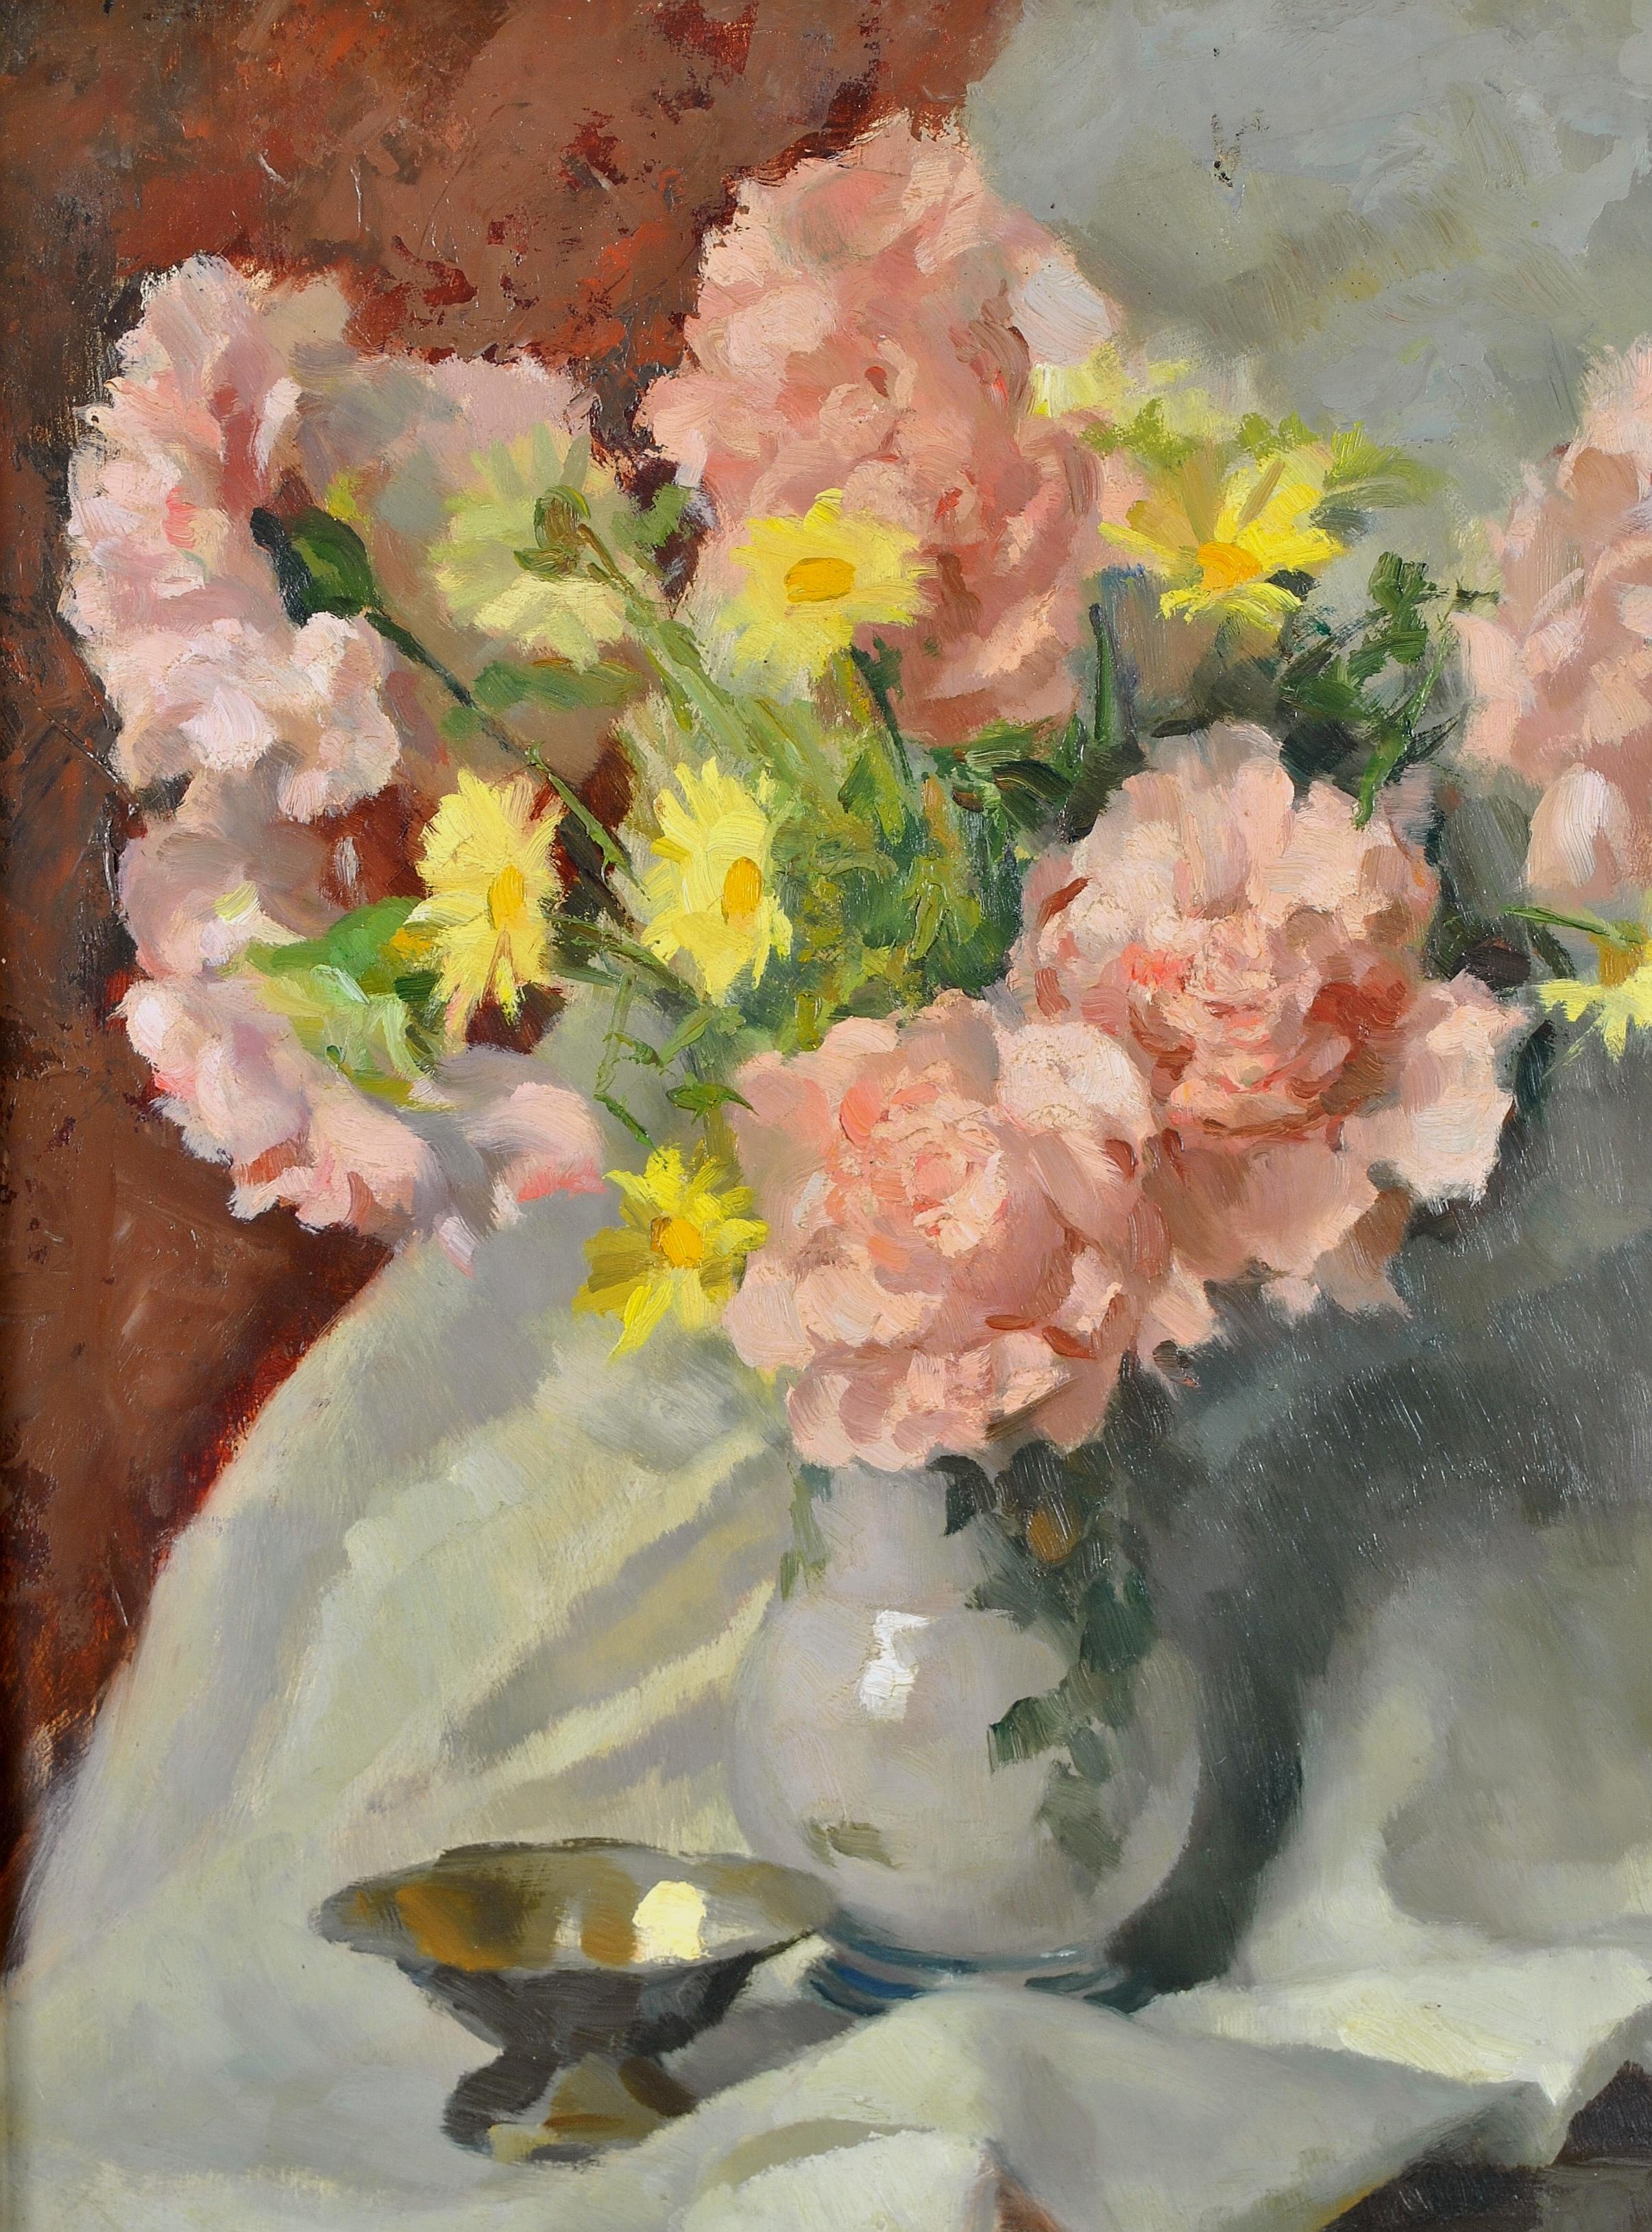 Roses et fleurs sauvages - Nature morte impressionniste italienne du 20e siècle - Painting de Carlo Marzorati